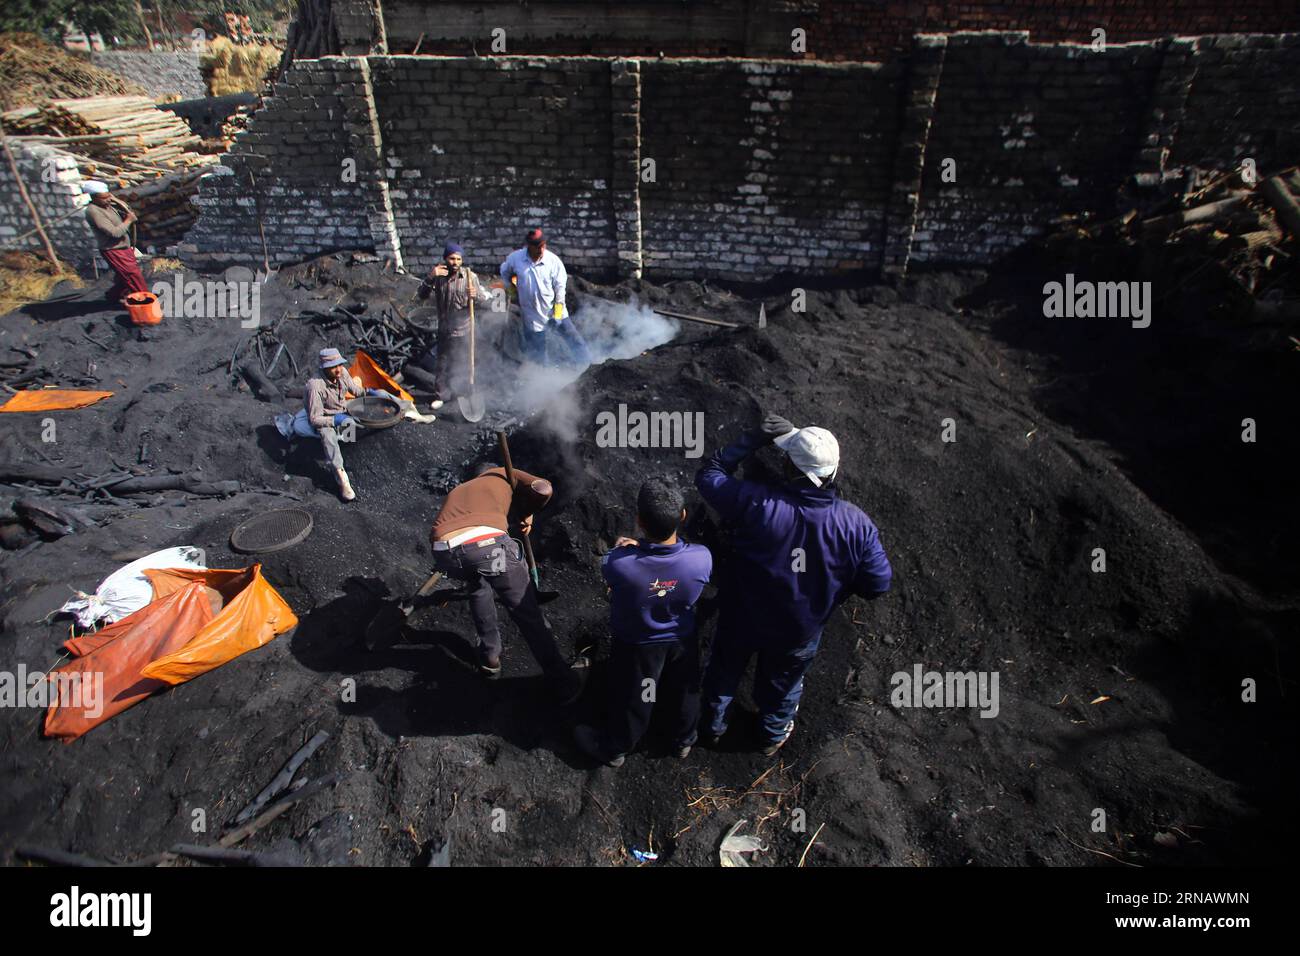 Les travailleurs égyptiens du charbon de bois travaillent dans une usine de charbon de bois à Sharqia, en Égypte, le 7 février 2016. Il y avait environ 300 usines de charbon en Egypte avec plus de 5 000 travailleurs employés. Mais le gouvernement égyptien en ferme maintenant beaucoup pour réduire la pollution environnementale causée par les unités industrielles de charbon de bois. )(zhf) ÉGYPTE-SHARQIA-PRODUCTION DE CHARBON AhmedxGomaa PUBLICATIONxNOTxINxCHN les travailleurs égyptiens de charbon travaillent DANS une usine de charbon à Sharqia Egypte LE 7 2016 février, il y avait environ 300 usines de charbon en Egypte avec plus de 5 000 travailleurs employés, mais le gouvernement égyptien EST maintenant CLO Banque D'Images